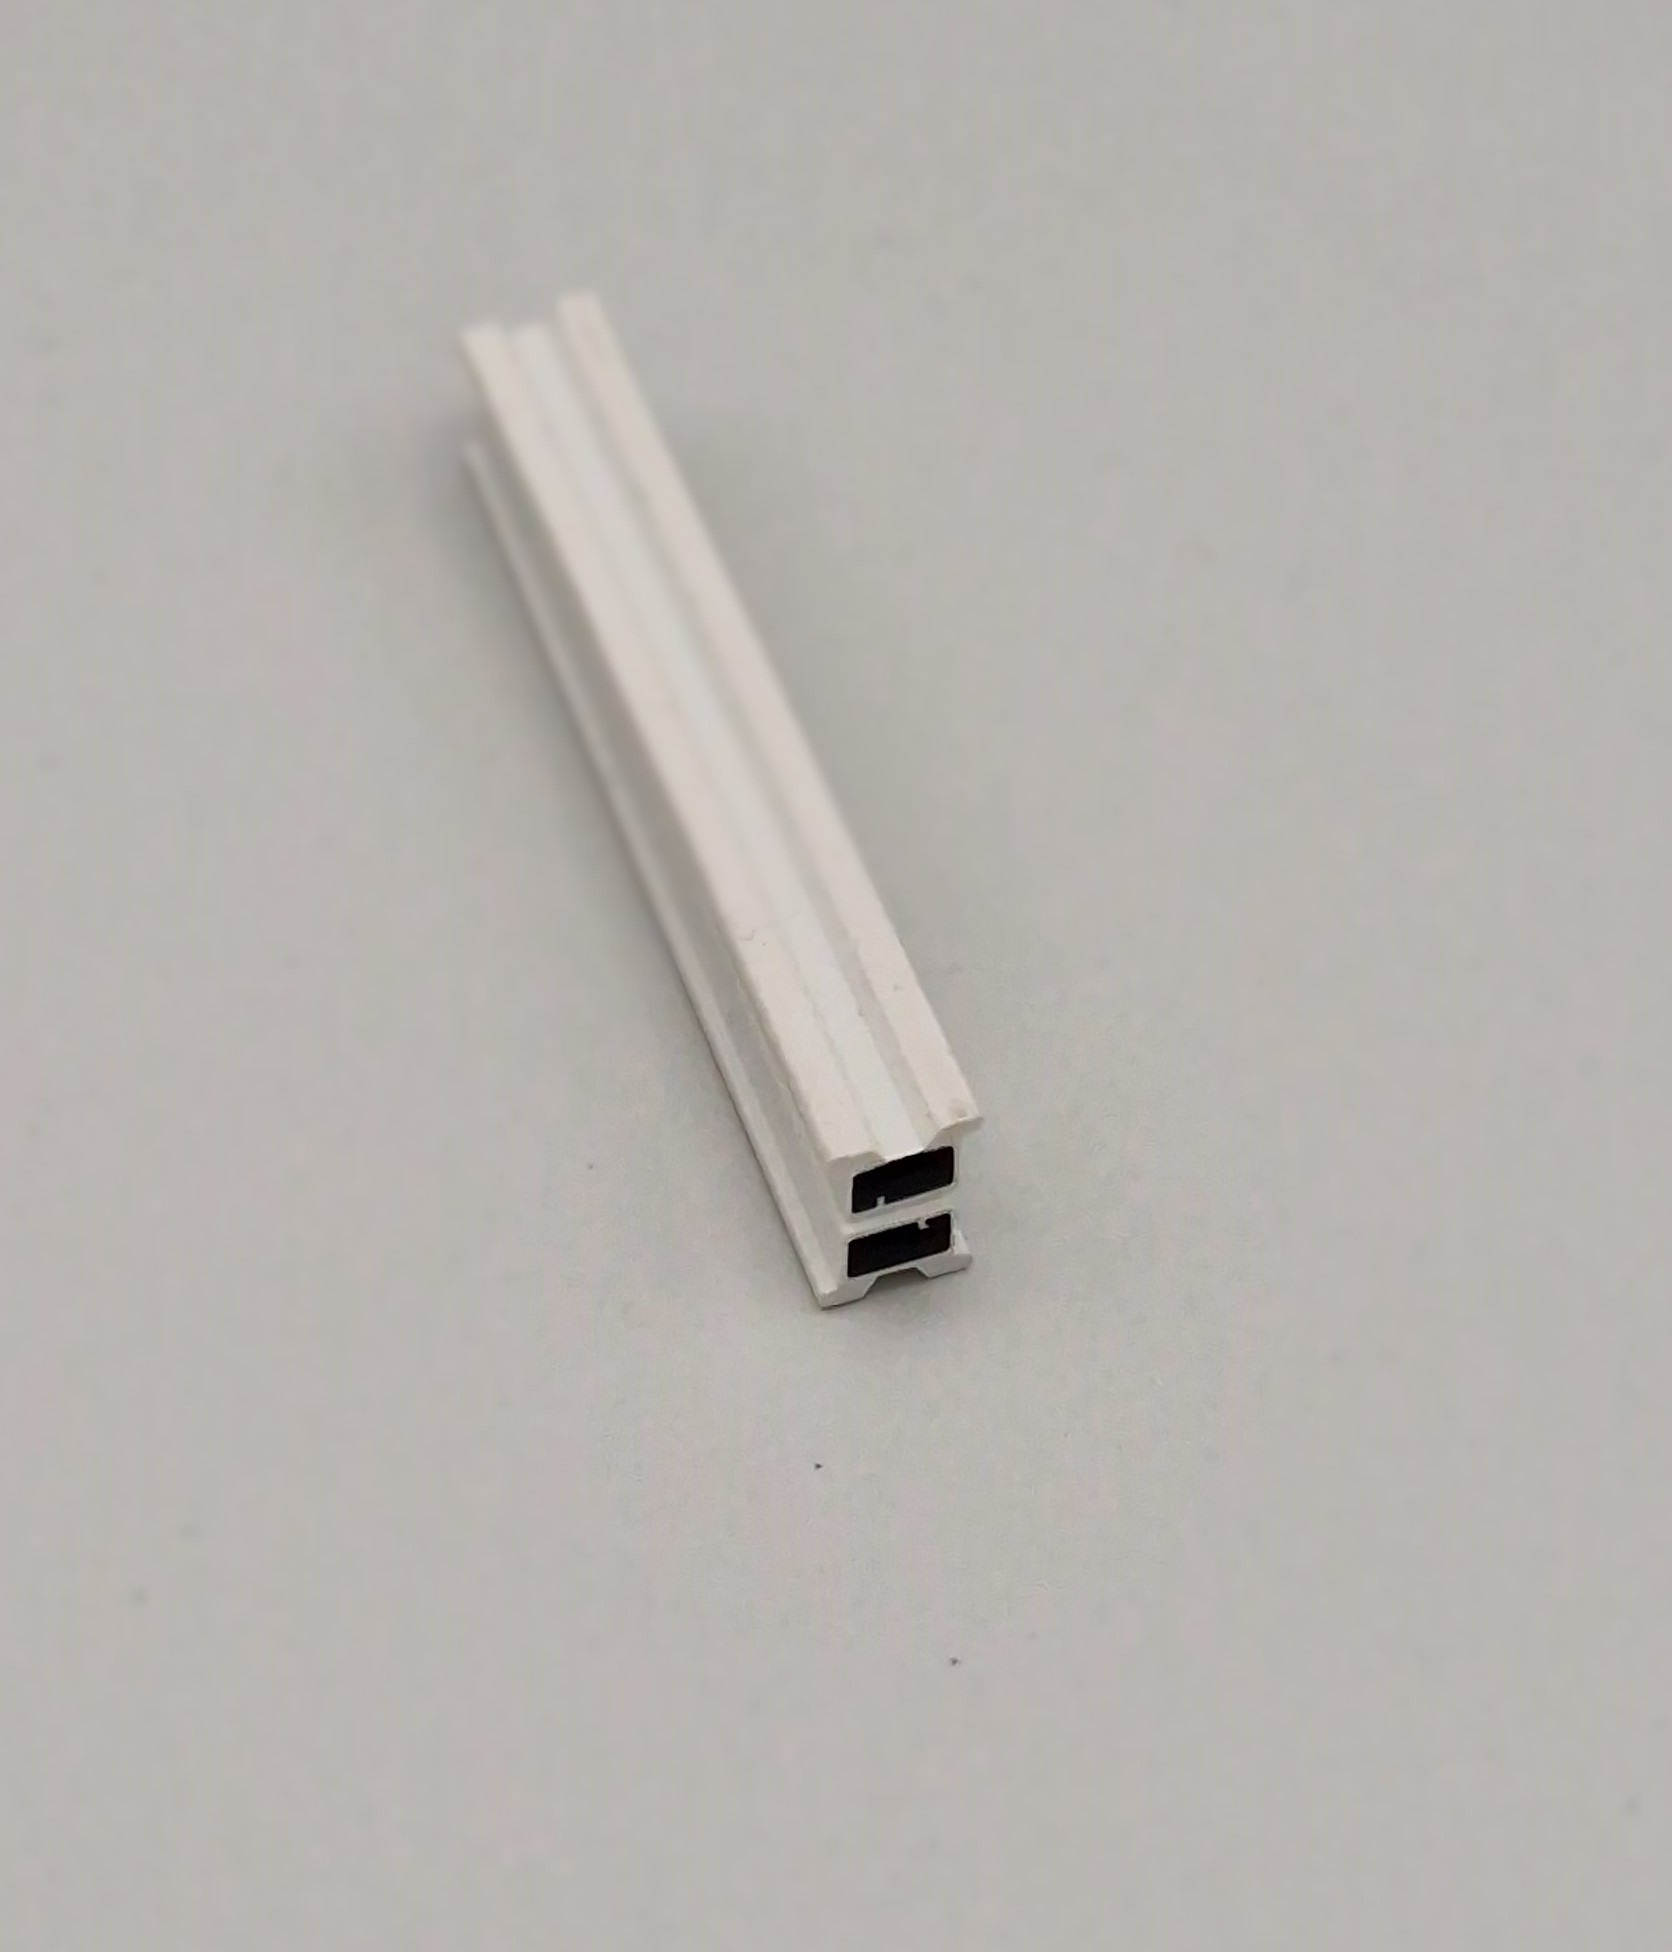 Muster von Magnetdichtung zum Einschieben, 7.5mm breit.